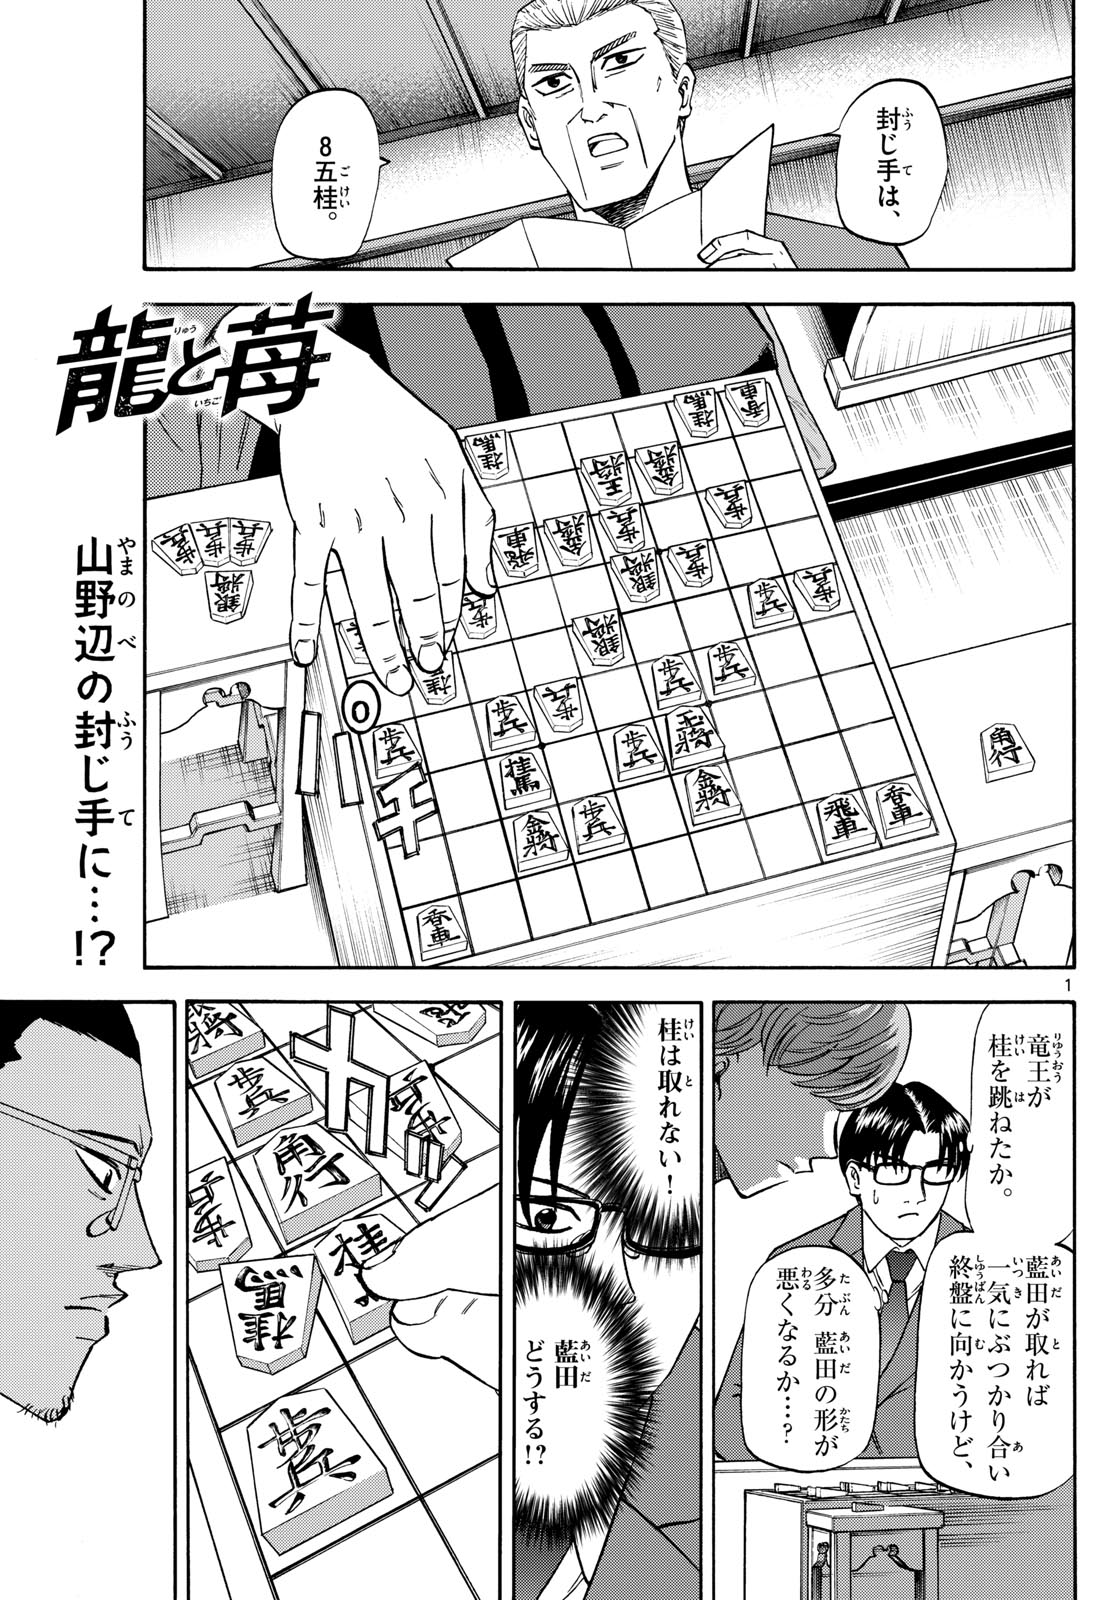 Tatsu to Ichigo - Chapter 177 - Page 1